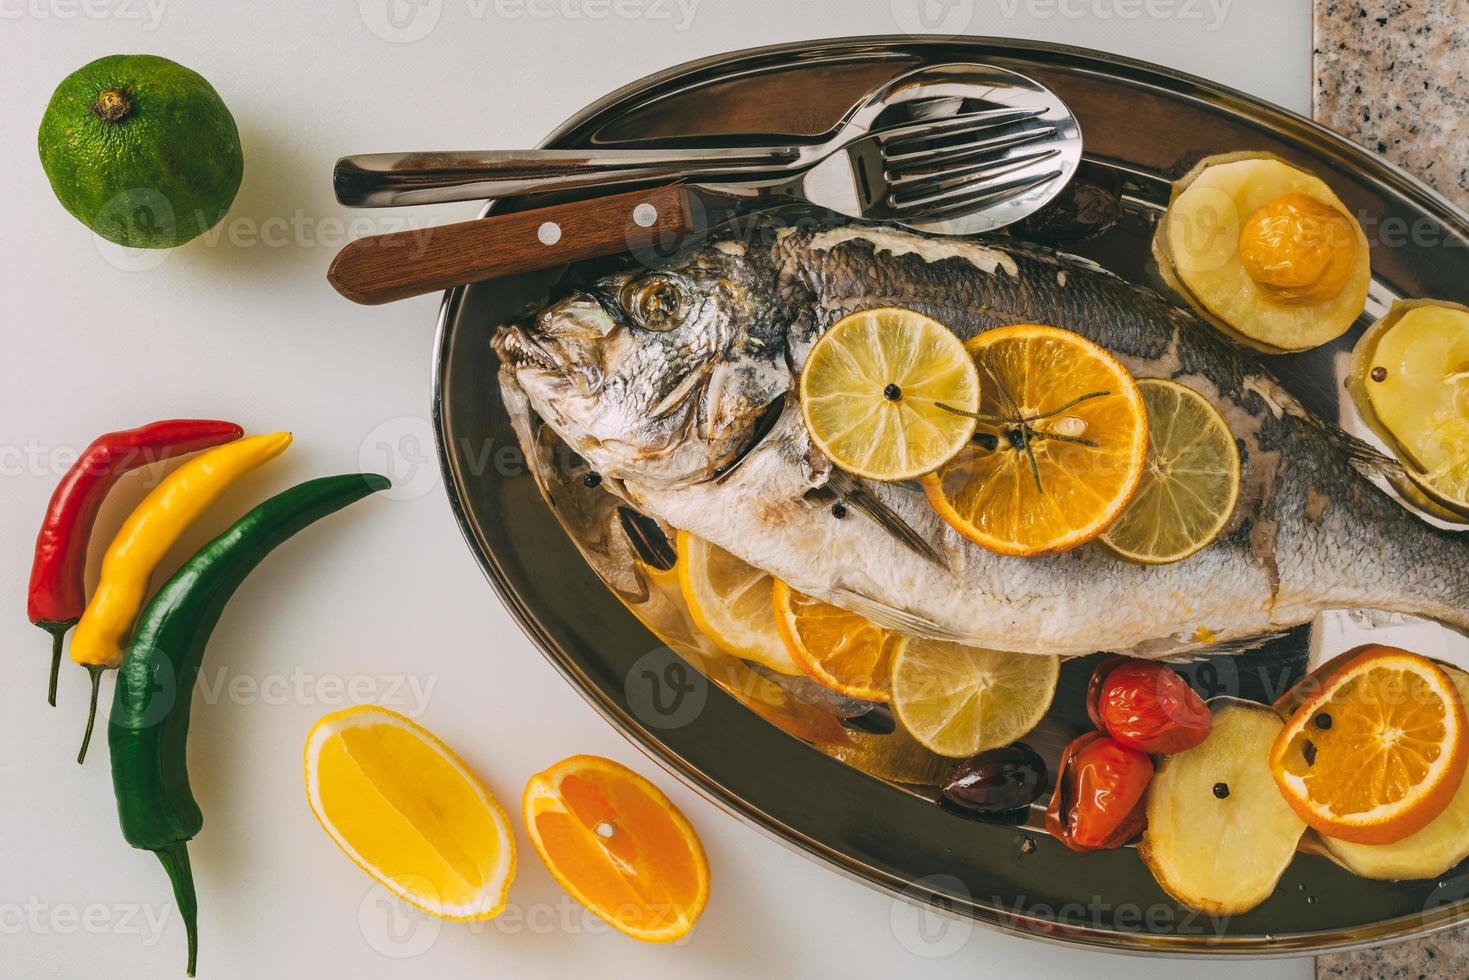 dorada pescado al plato al horno con patatas, romero, limón, naranja, aceitunas, tomates y lima. orata fresca, preparación de pescado dorade. foto